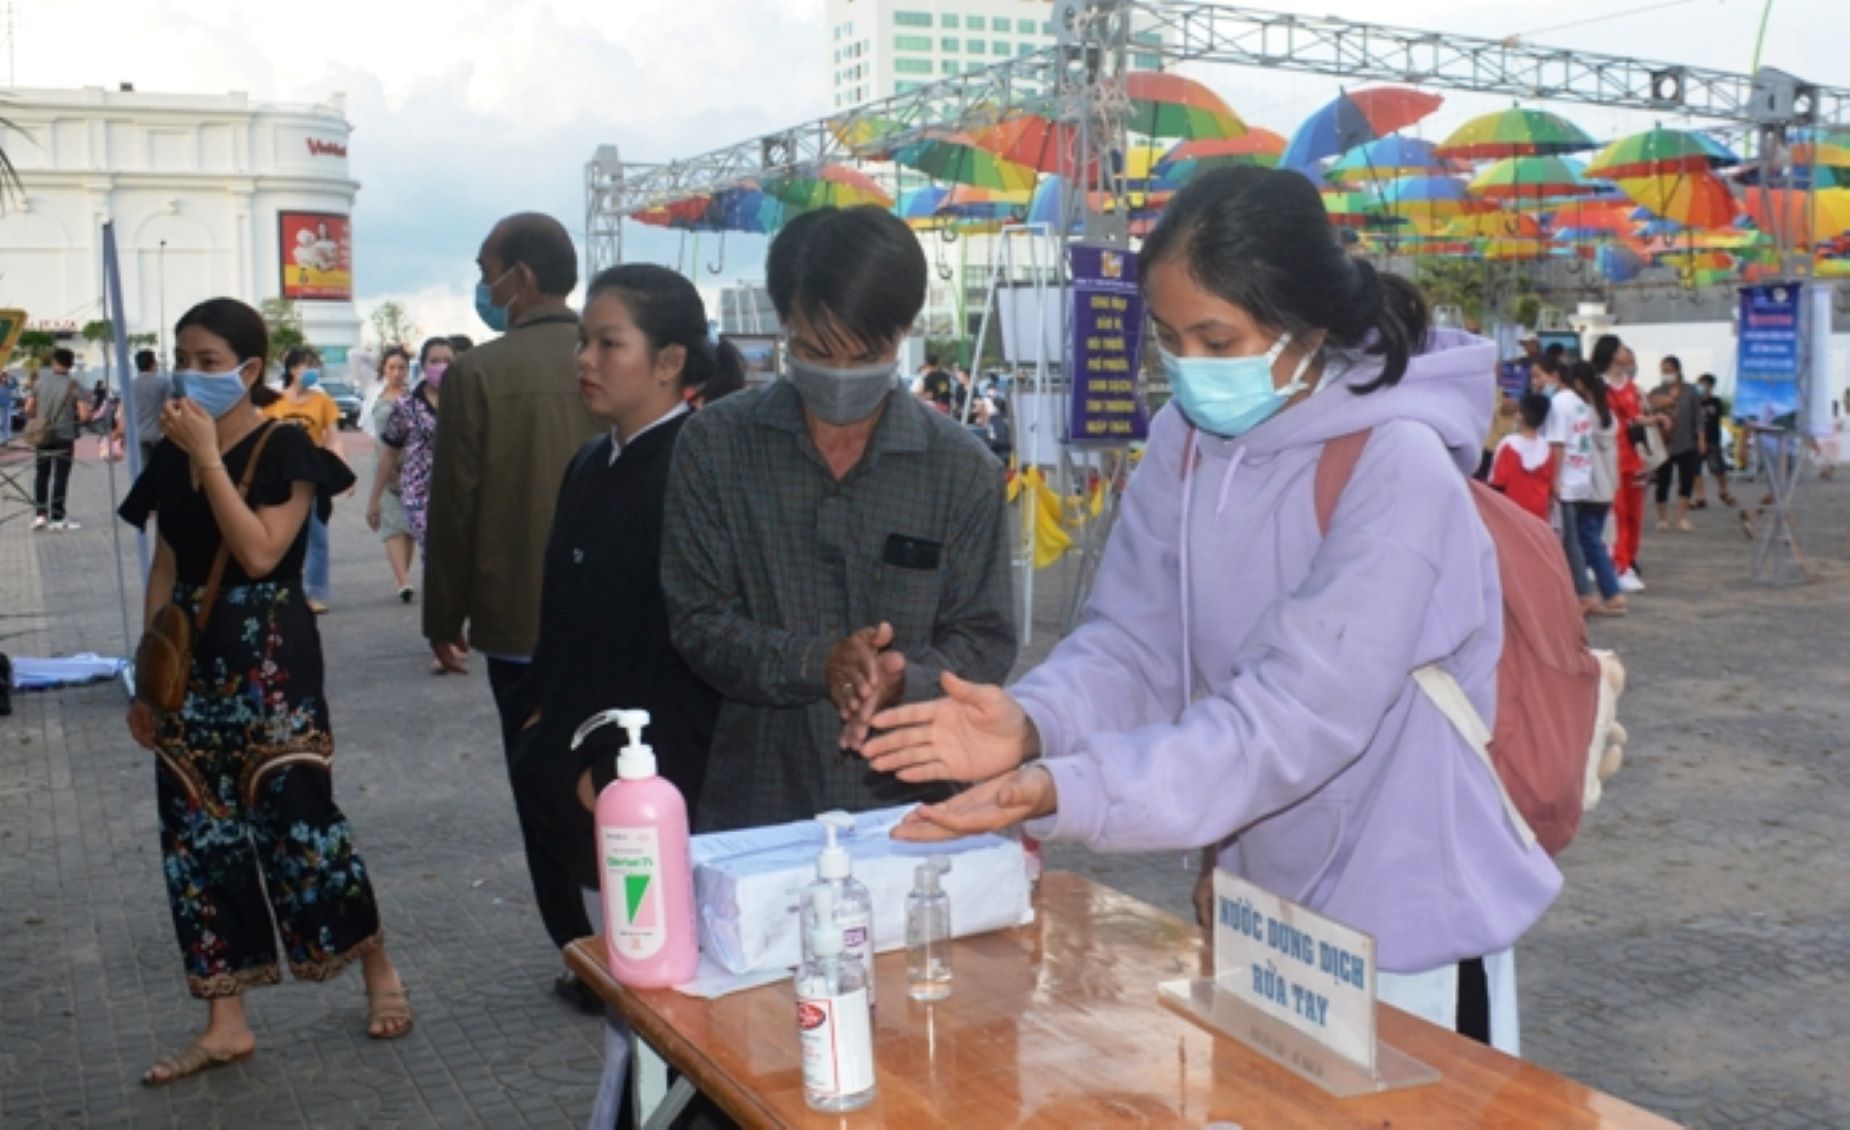 Ban tổ chức bố trí nước rửa tay trước cổng ngày hội, nhằm đảm bảo công tác phòng chống dịch bệnh